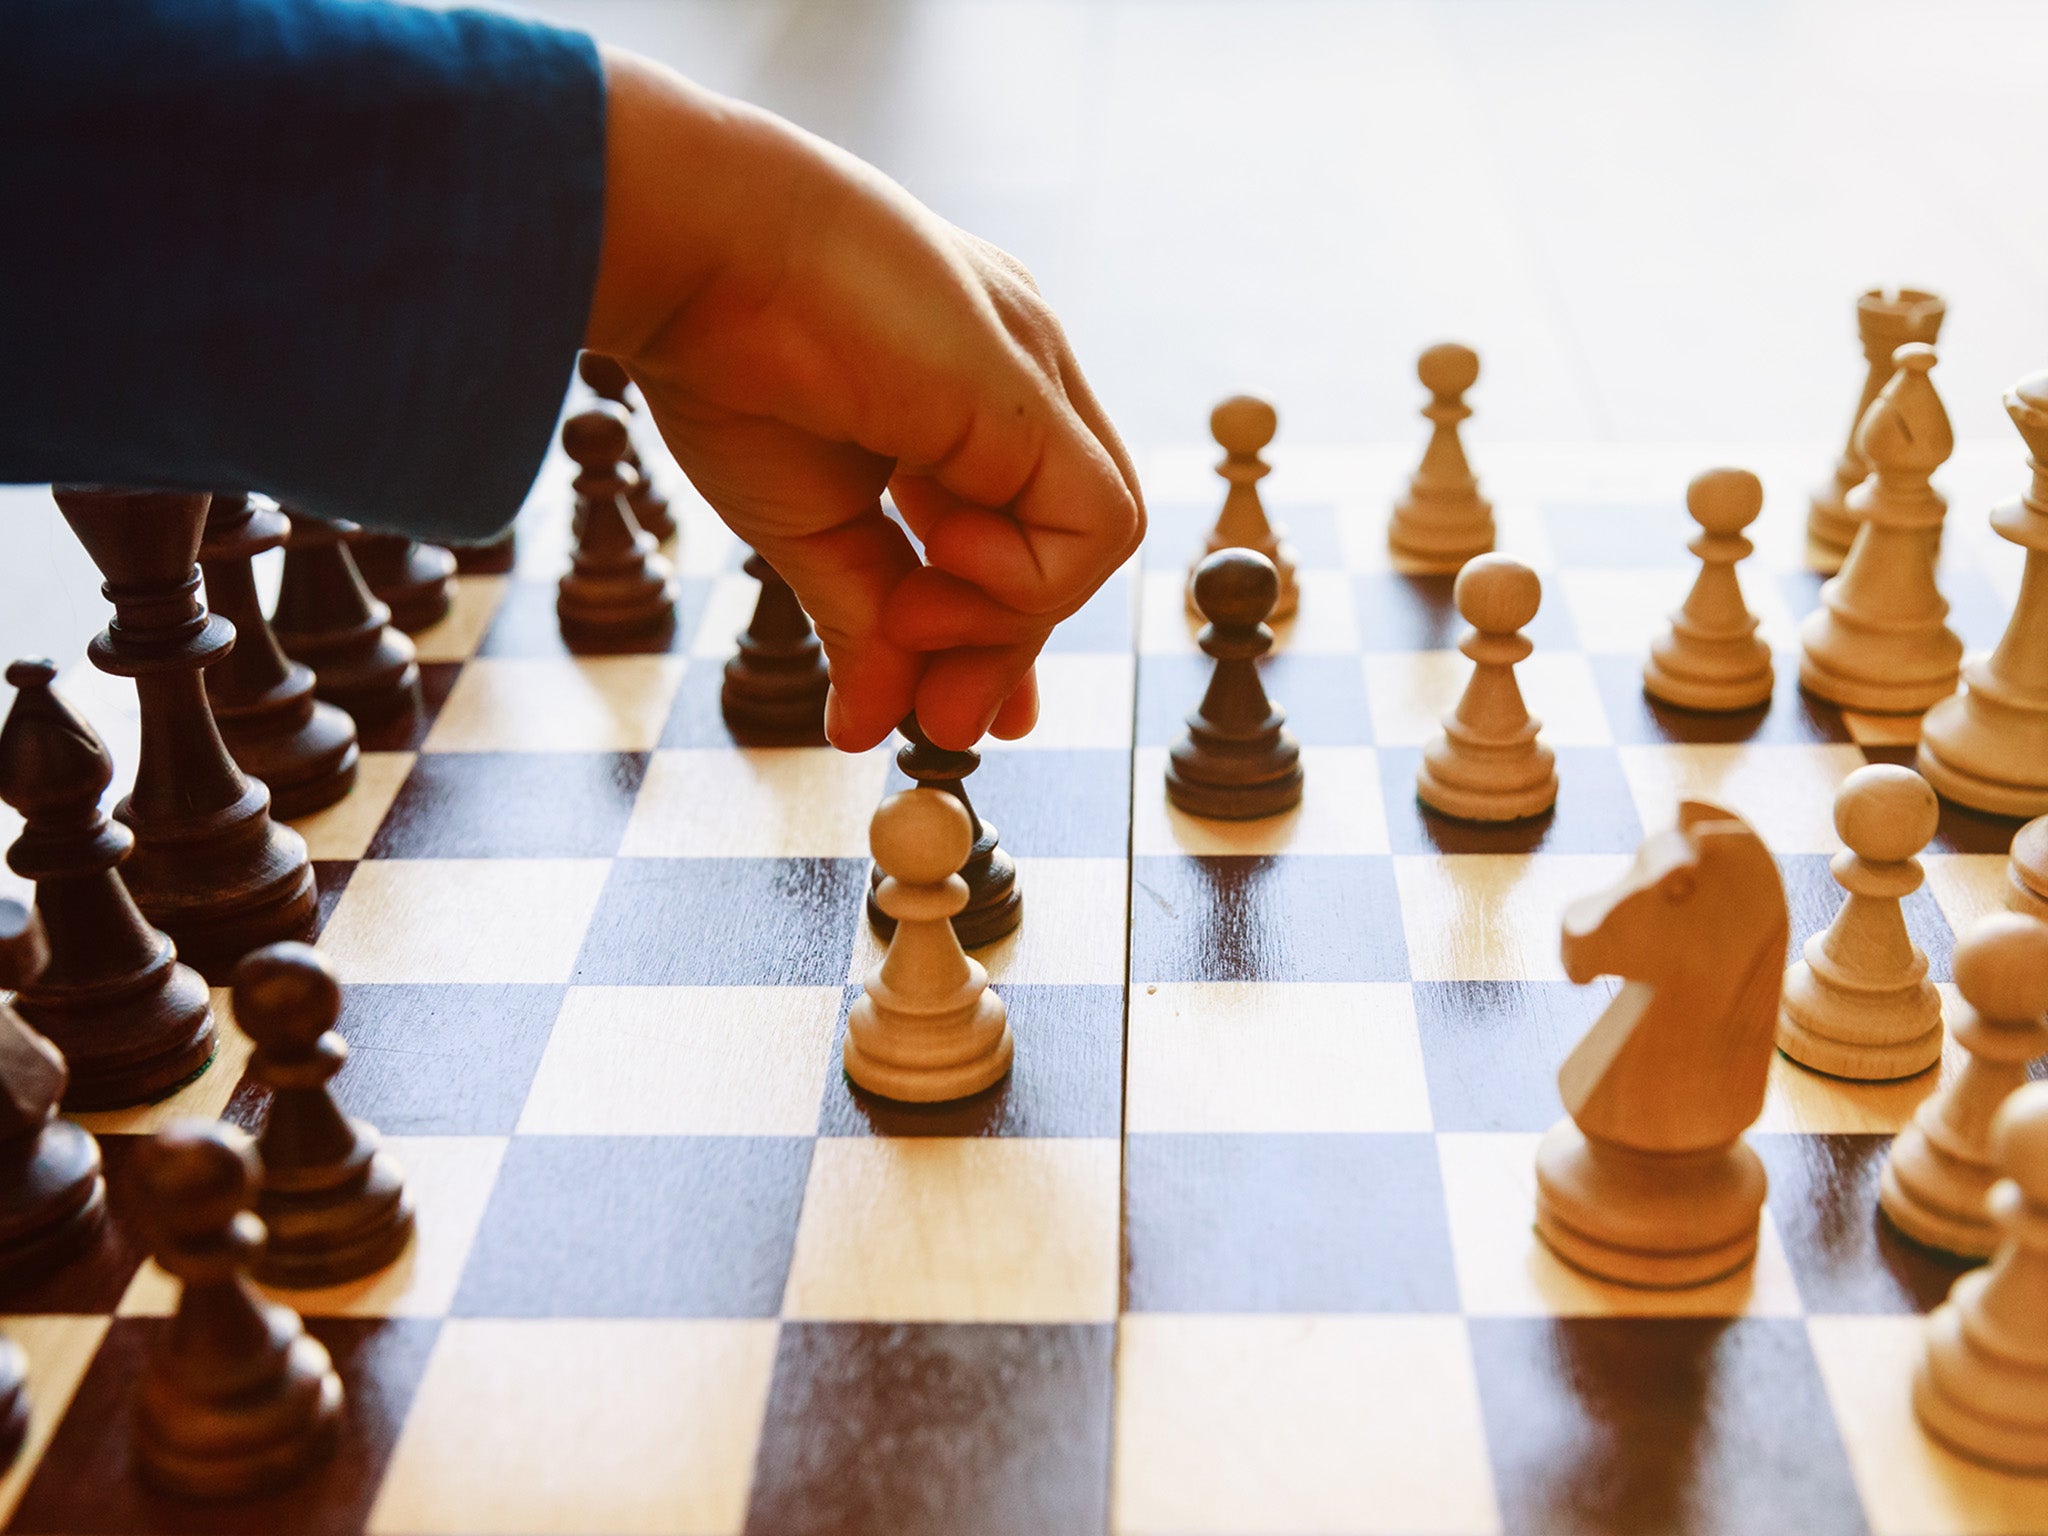 Greensboro kids challenge chess master